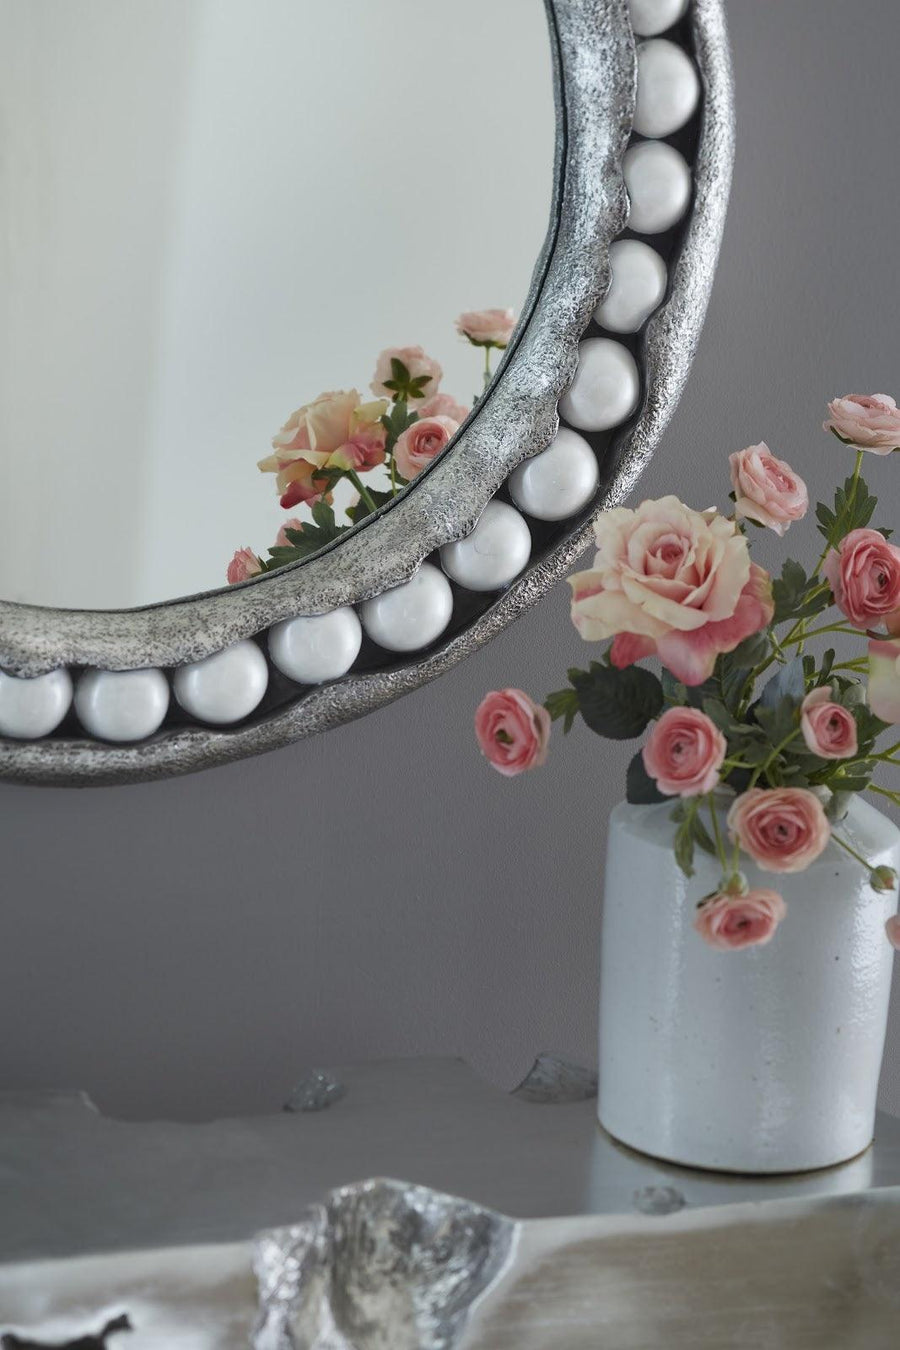 Pearl Round Silver Mirror - Maison Vogue